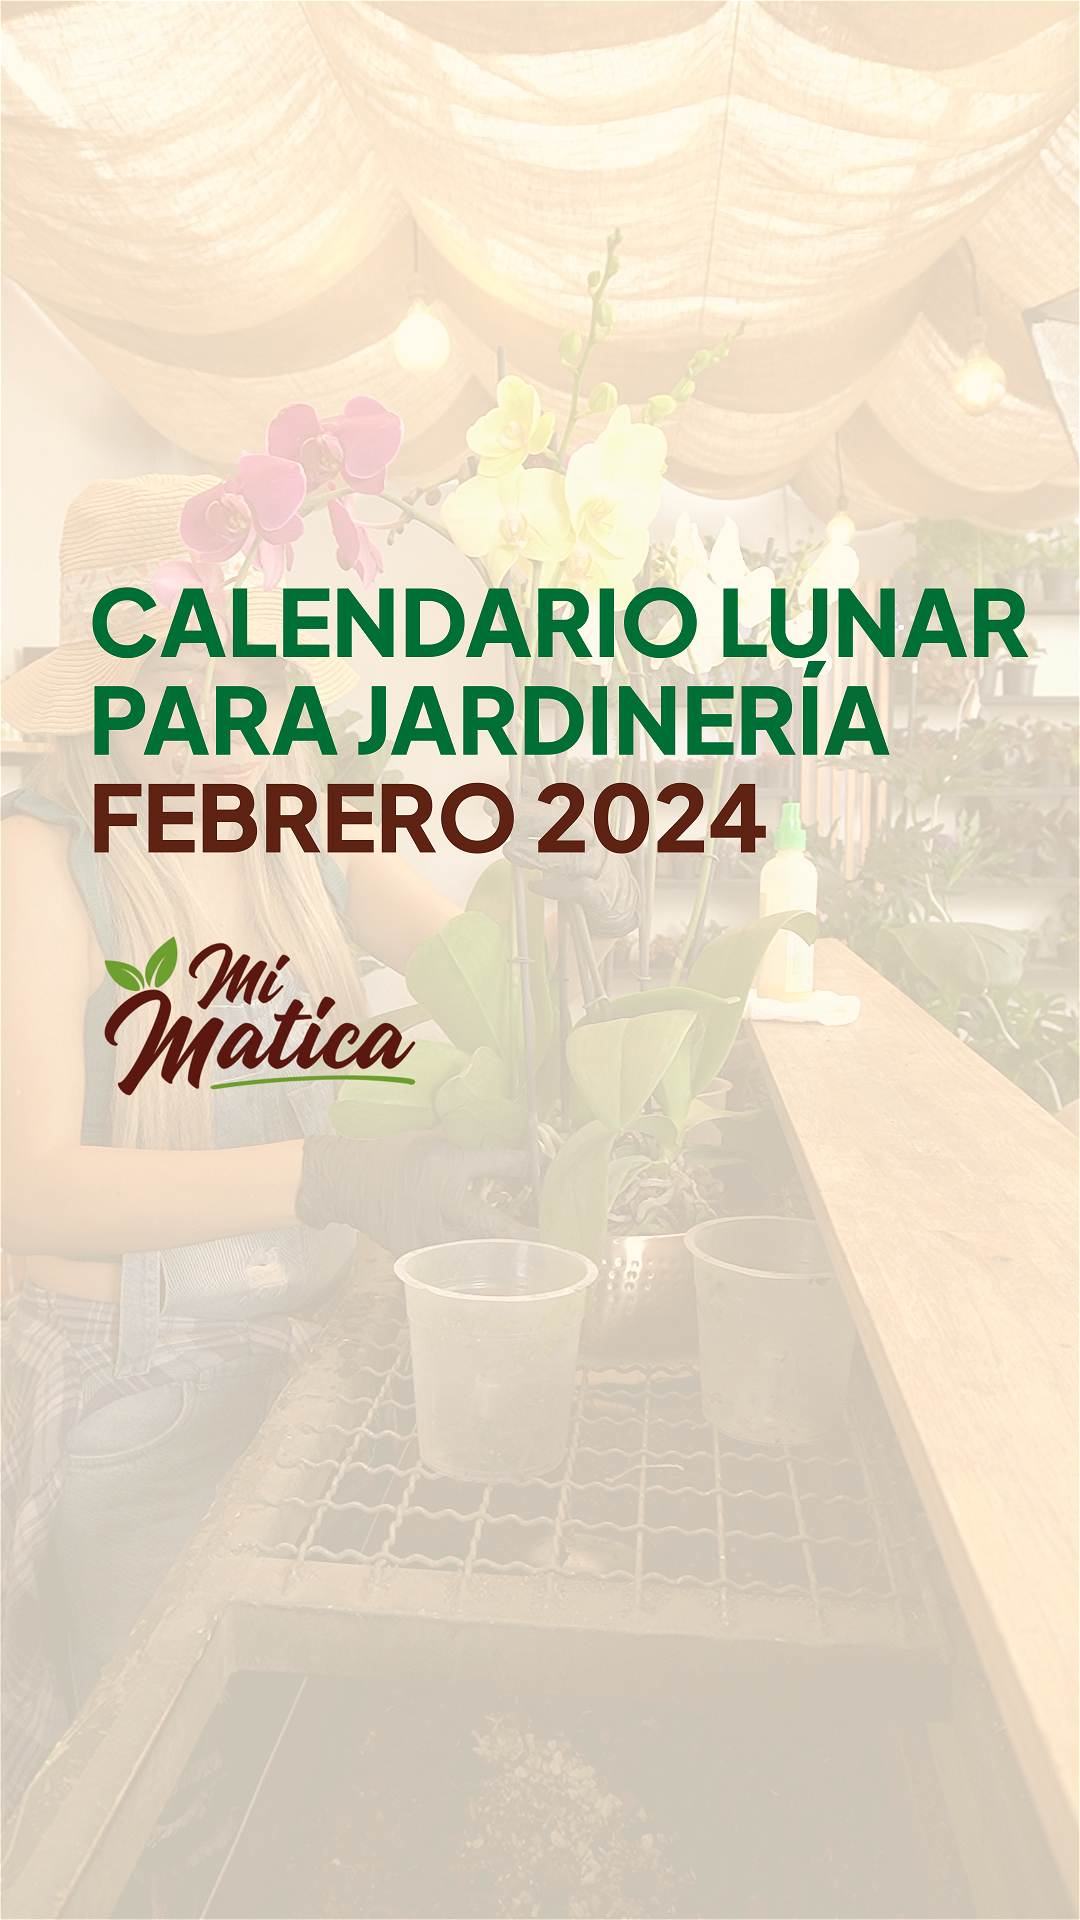 Calendario lunar del 2024